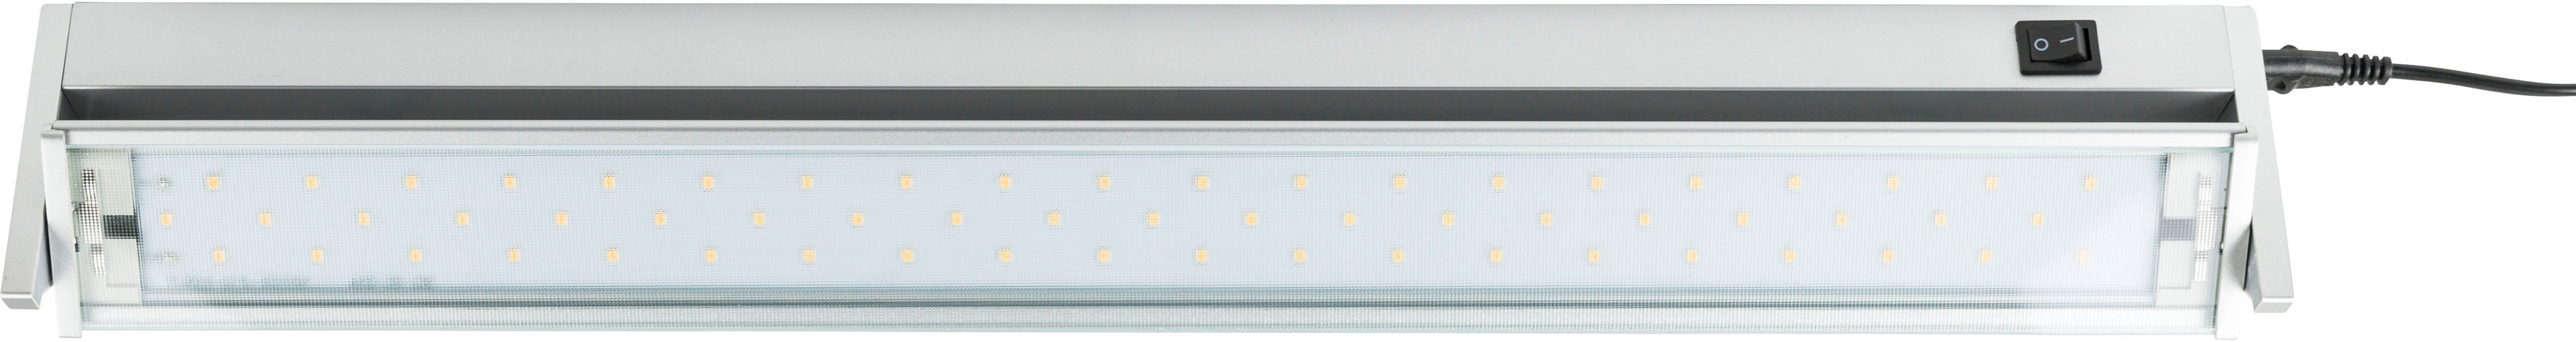 HEITRONIC Lichtleiste Miami, LED fest Set schwenkbar und Schalter, mit Komplett Küchenbeleuchtung, anschlussfertiges integriert, Küchenlampe, Warmweiß